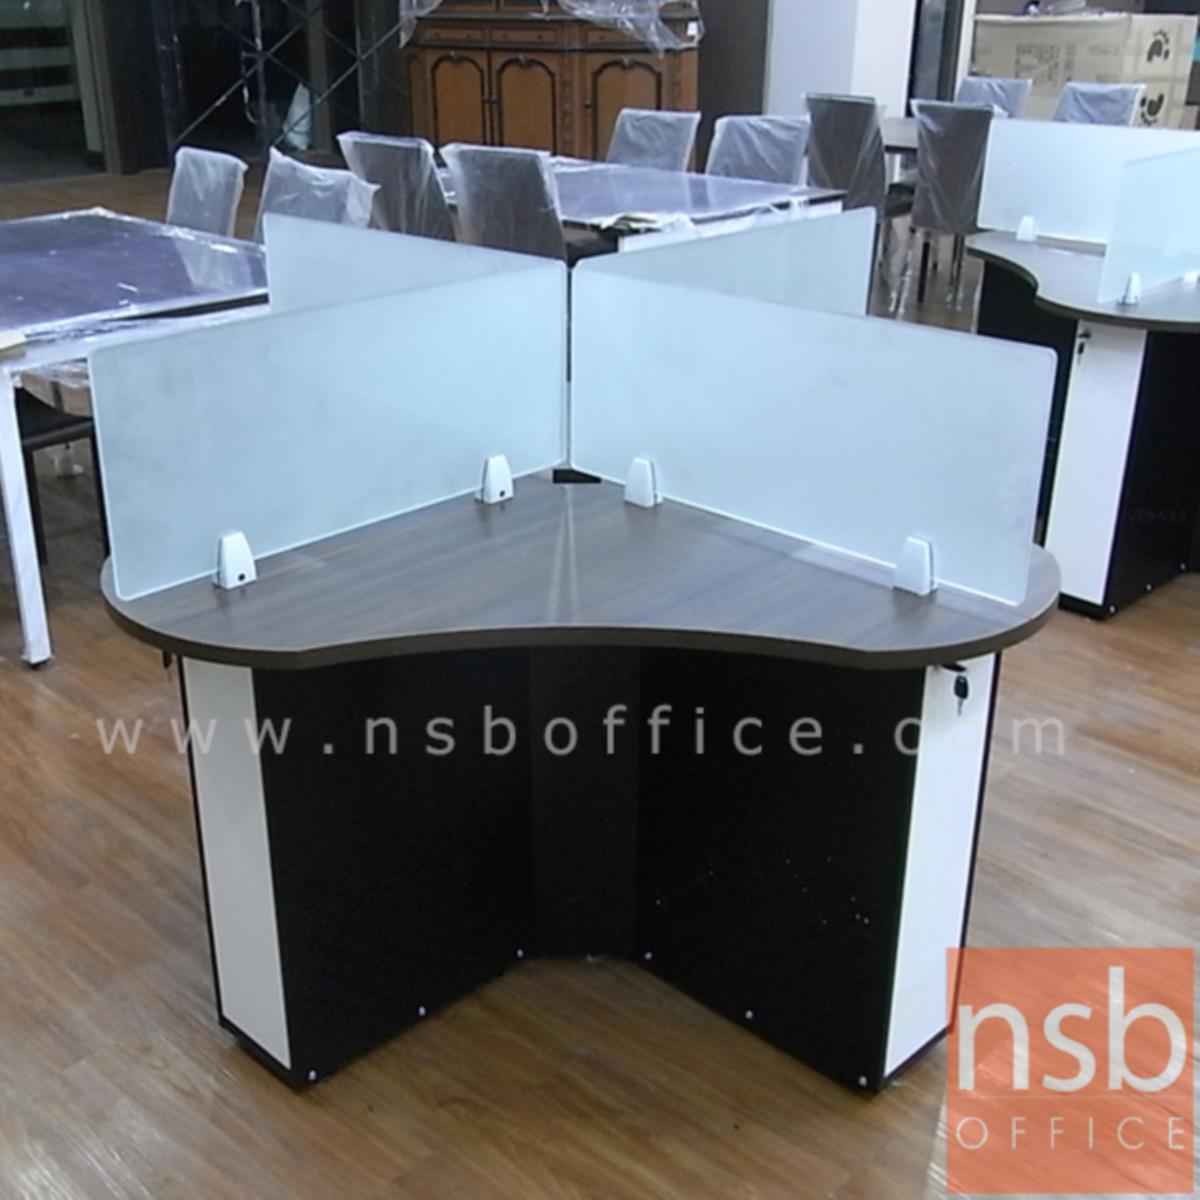 ชุดโต๊ะทำงานกลุ่ม 4 ที่นั่ง   ขนาด 150W, 180W cm. พร้อมมินิสกรีนกระจก